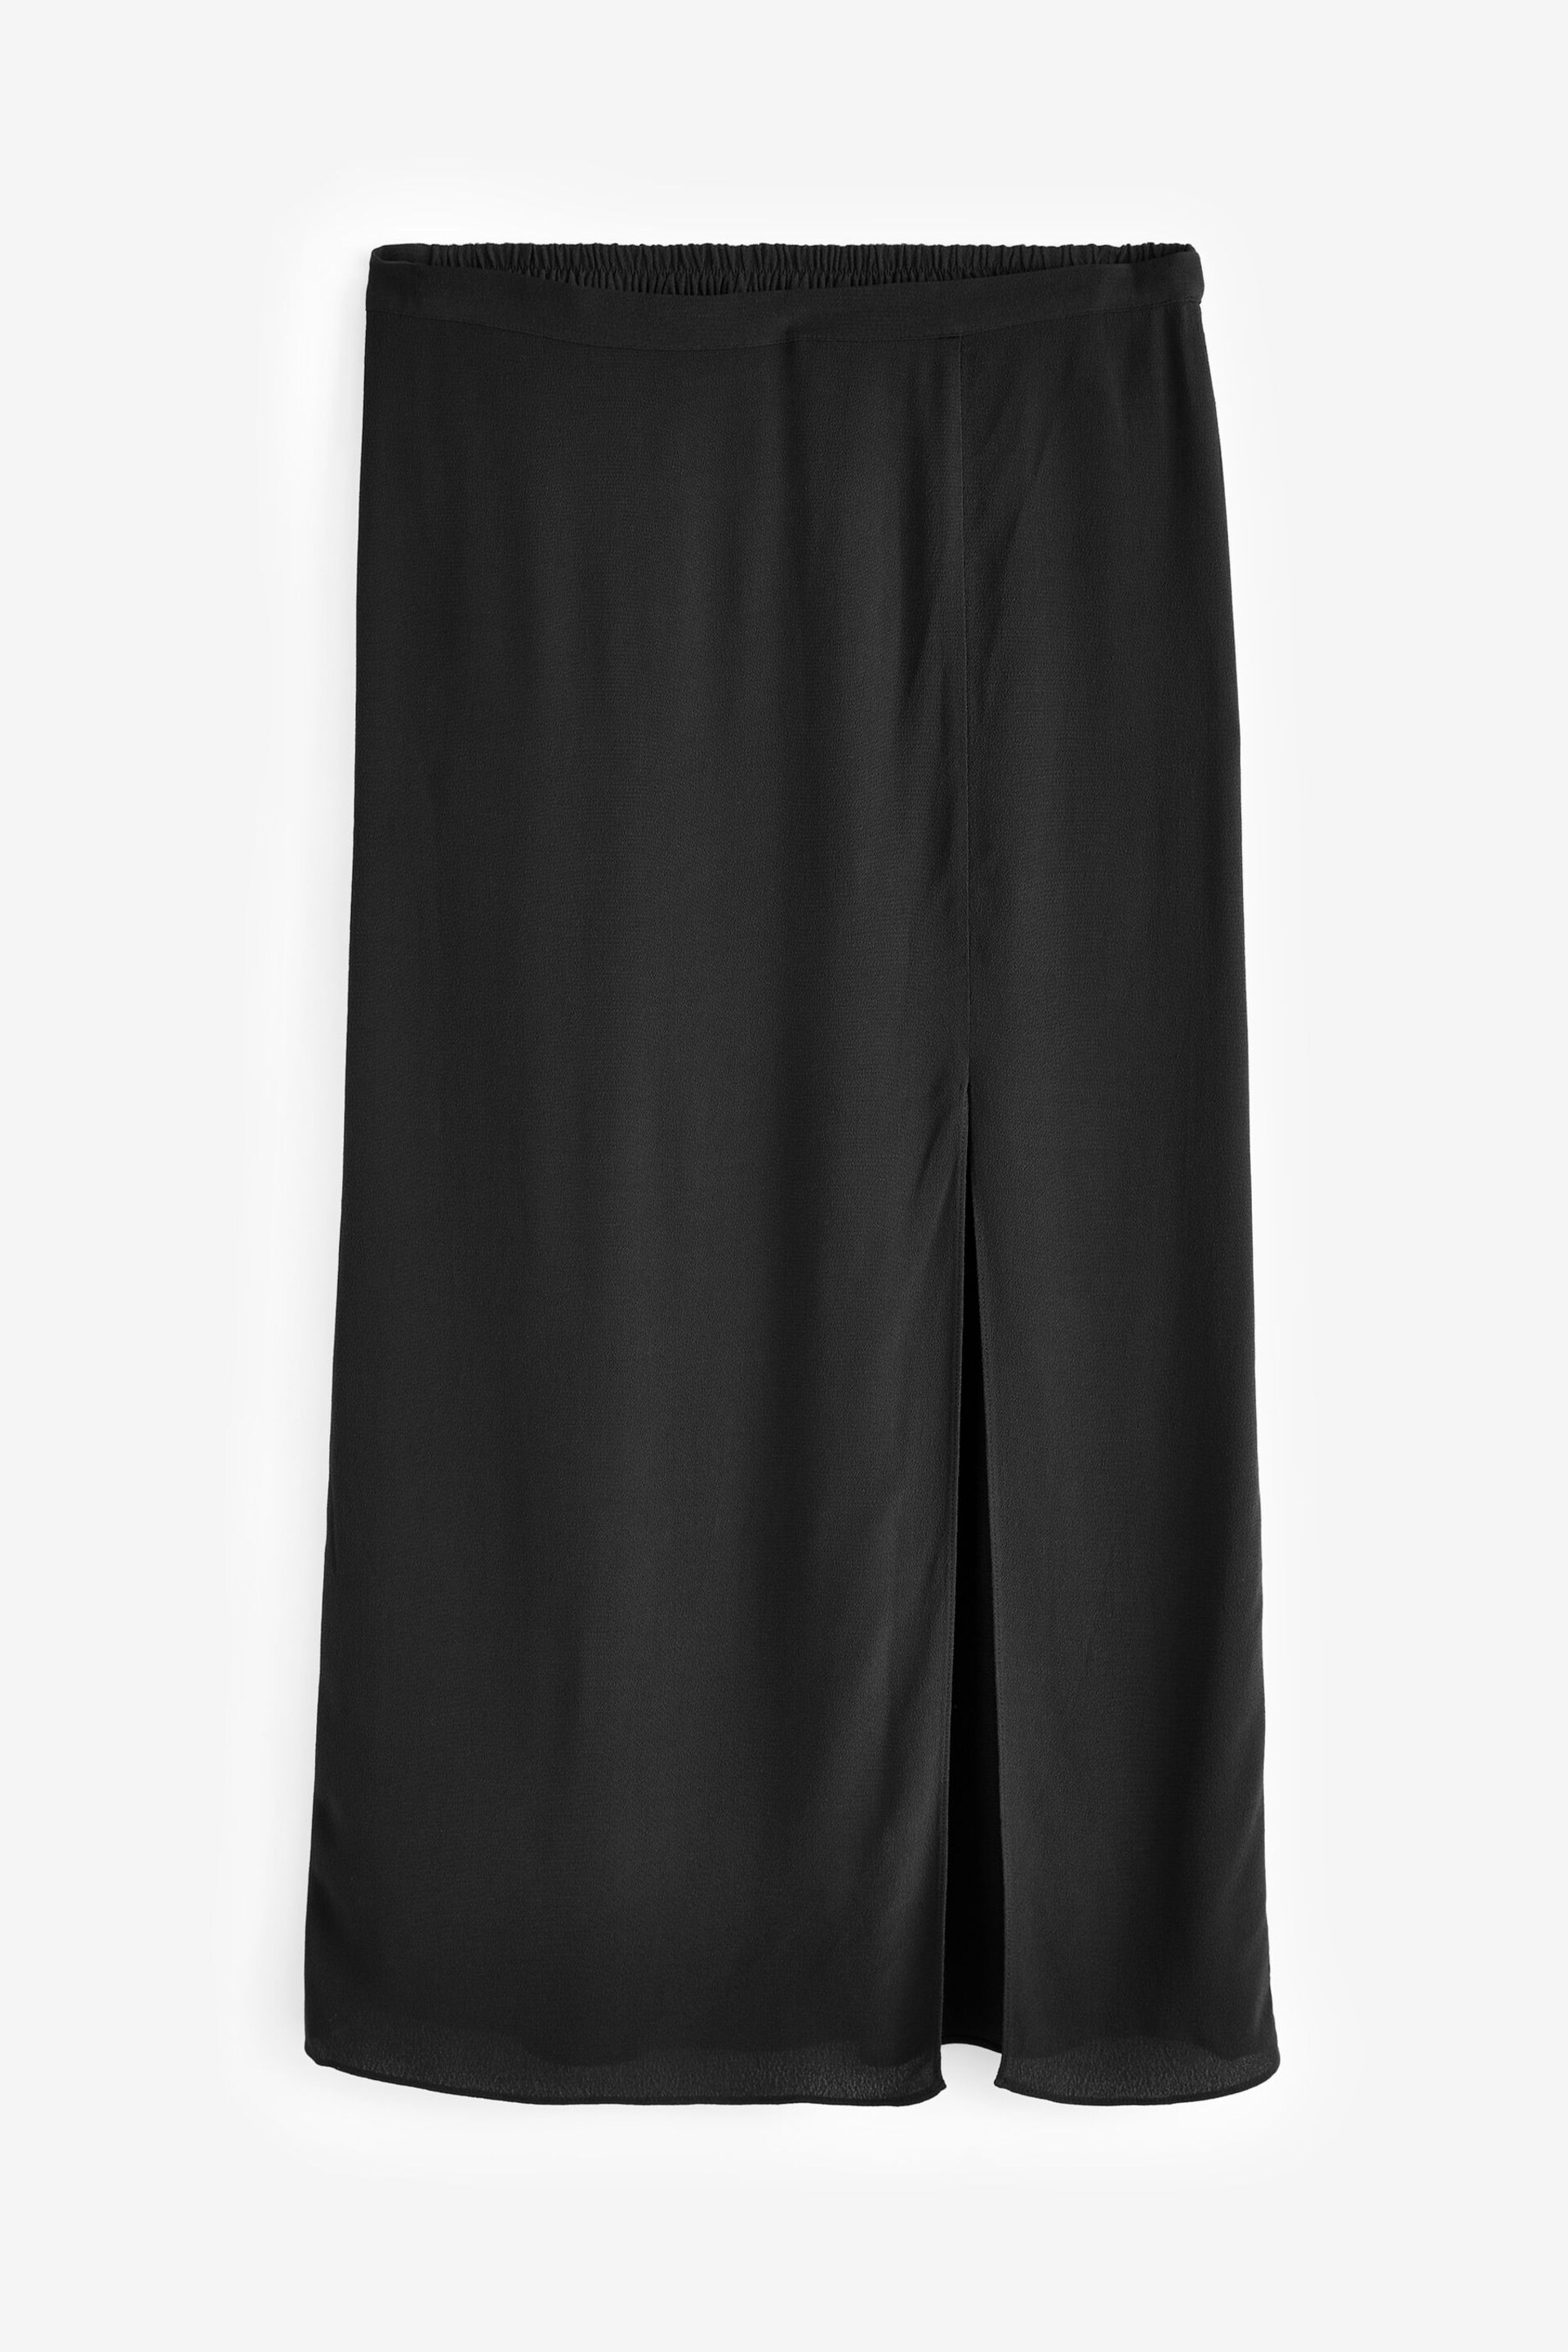 Hush Black Anya Split Maxi Skirt - Image 3 of 3